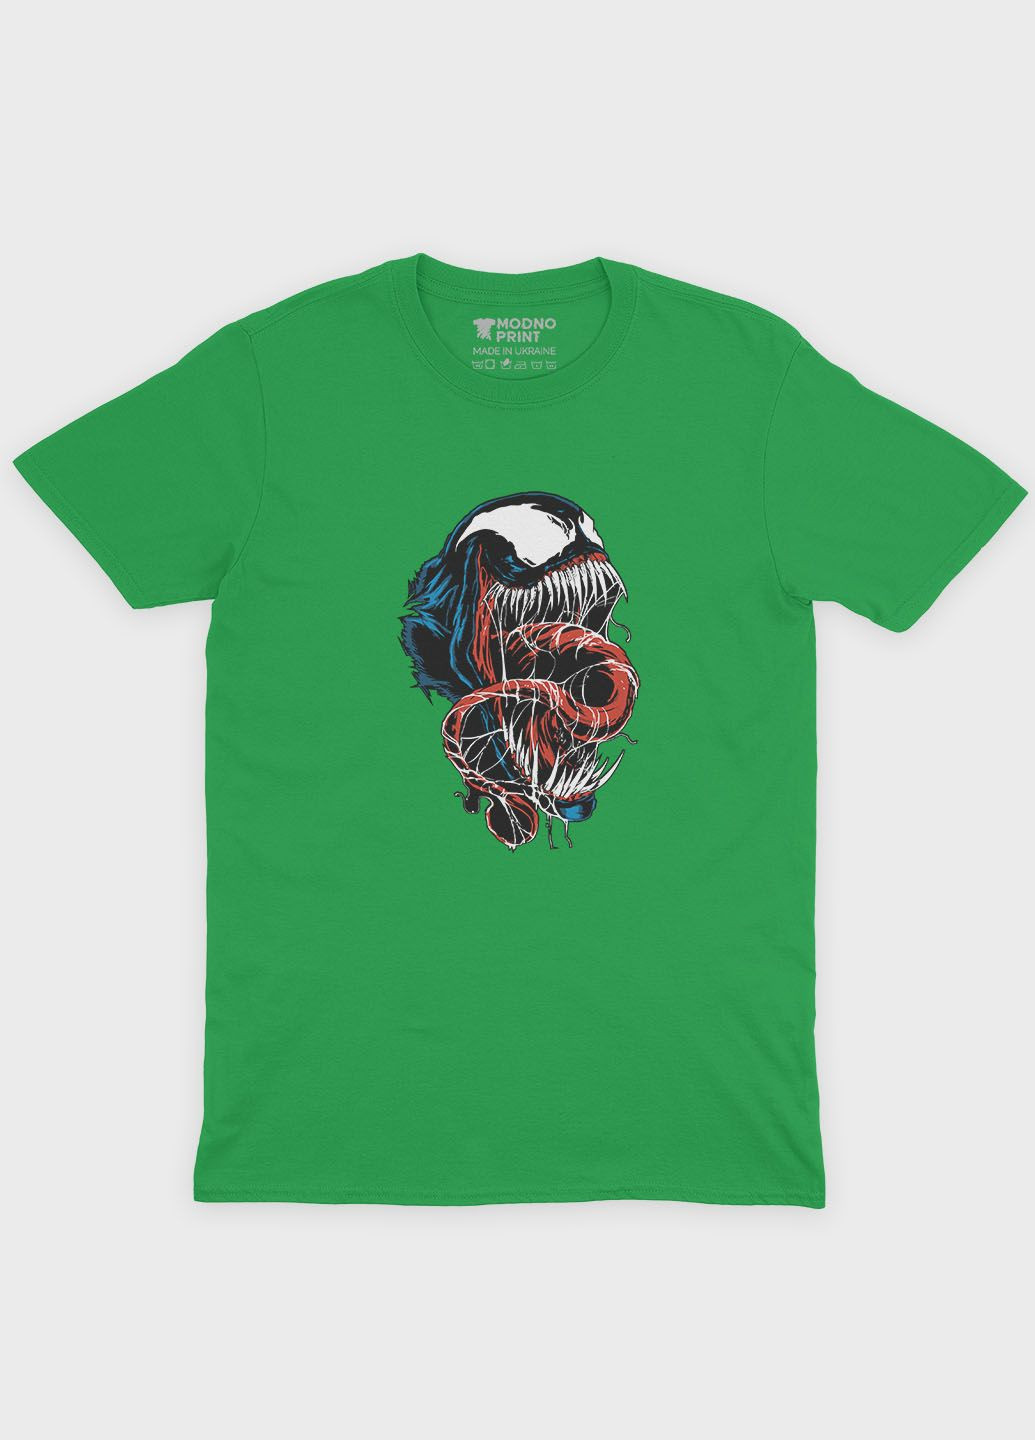 Зелена демісезонна футболка для хлопчика з принтом суперзлодія - веном (ts001-1-keg-006-013-020-b) Modno